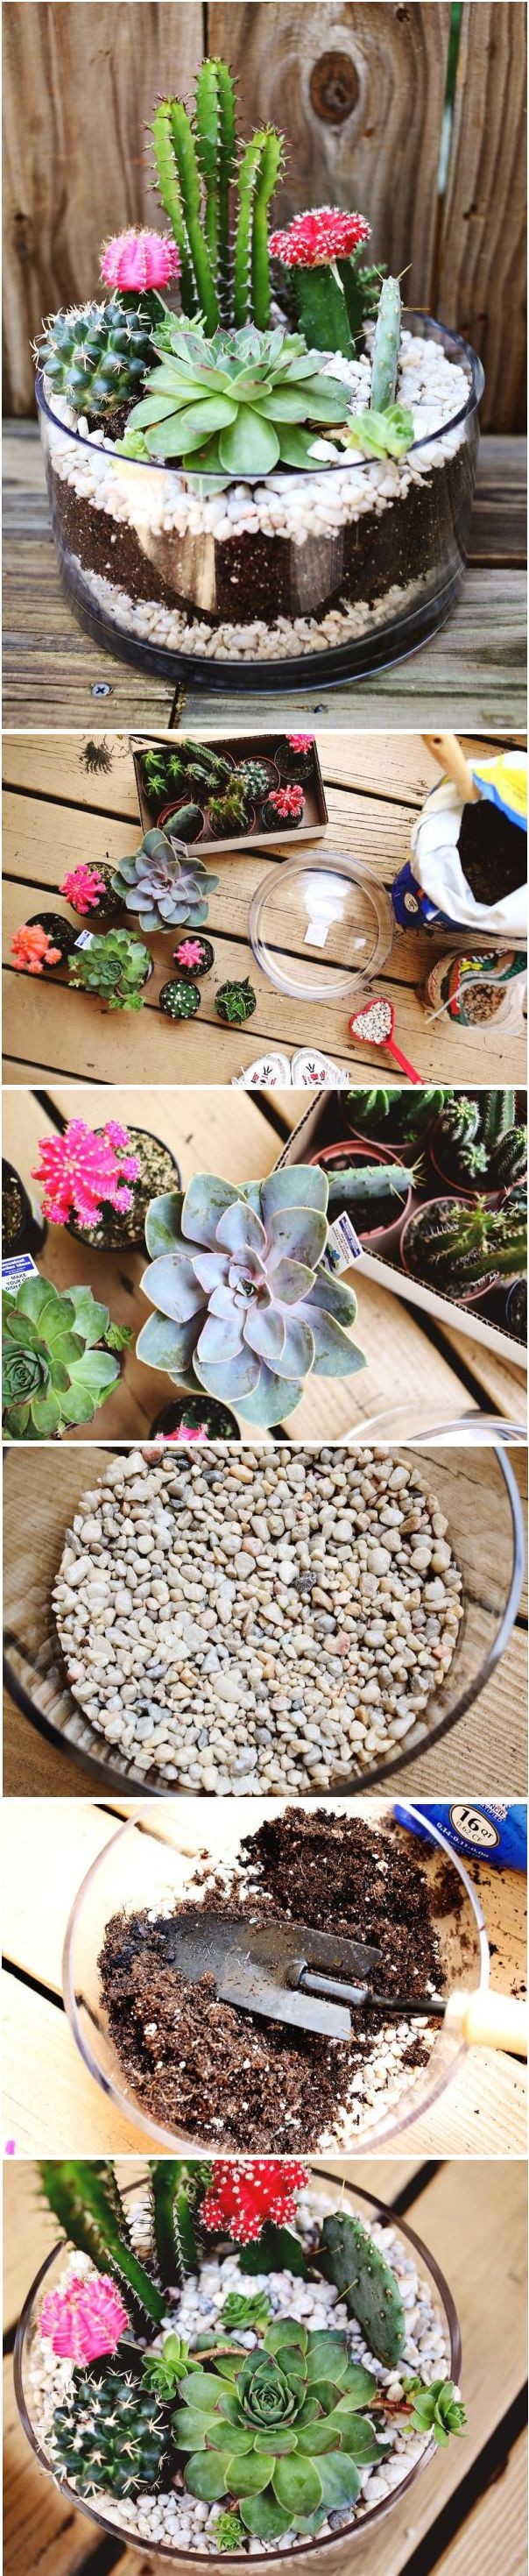 DIY Cactus Garden Idea. Perfect for my growing bab...